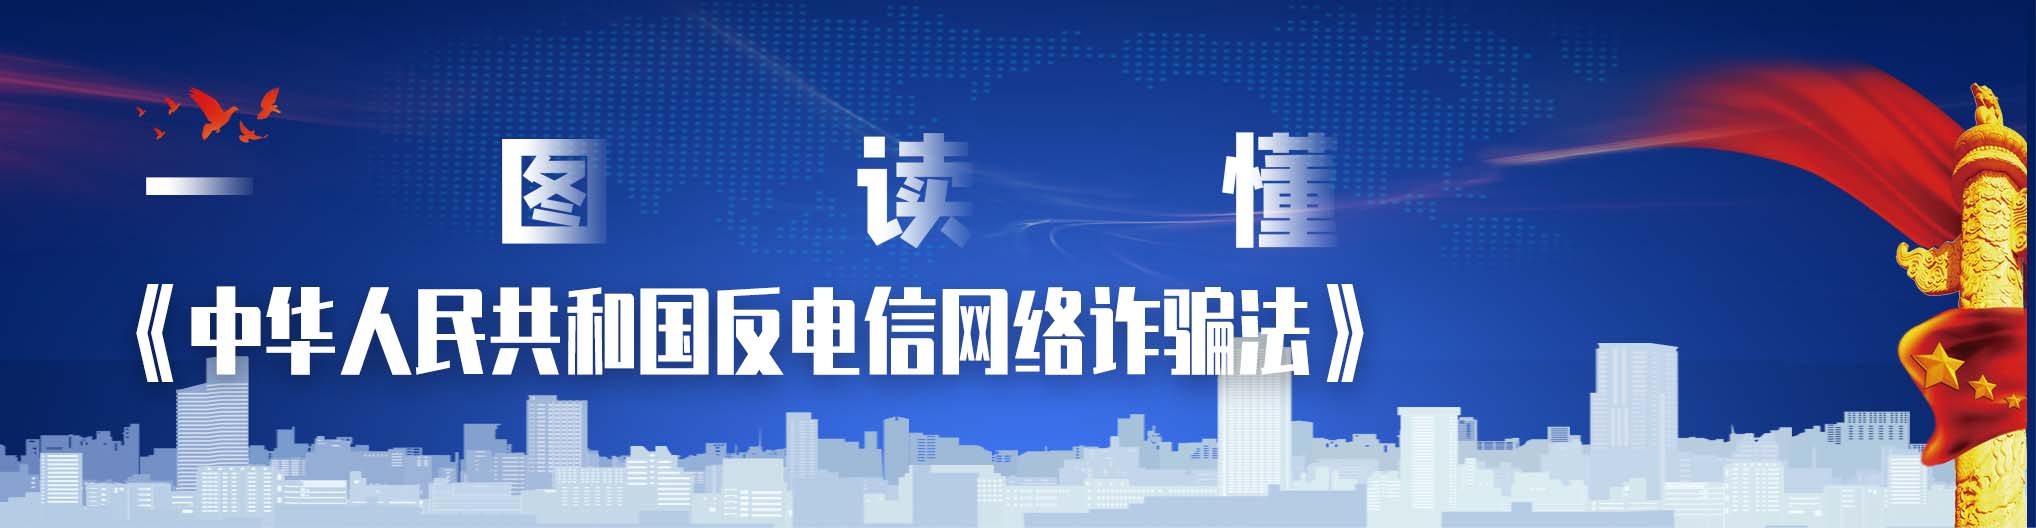 远特通信一图读懂《中华人民共和国反电信网络诈骗犯法》